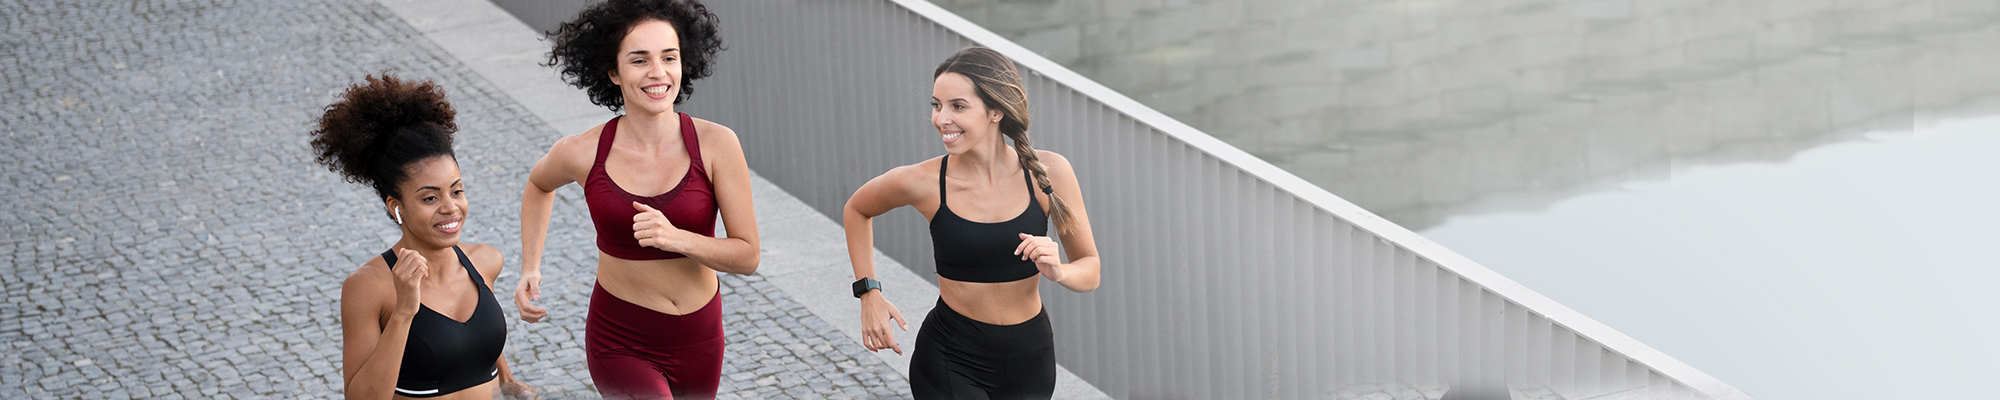 Image showing women jogging